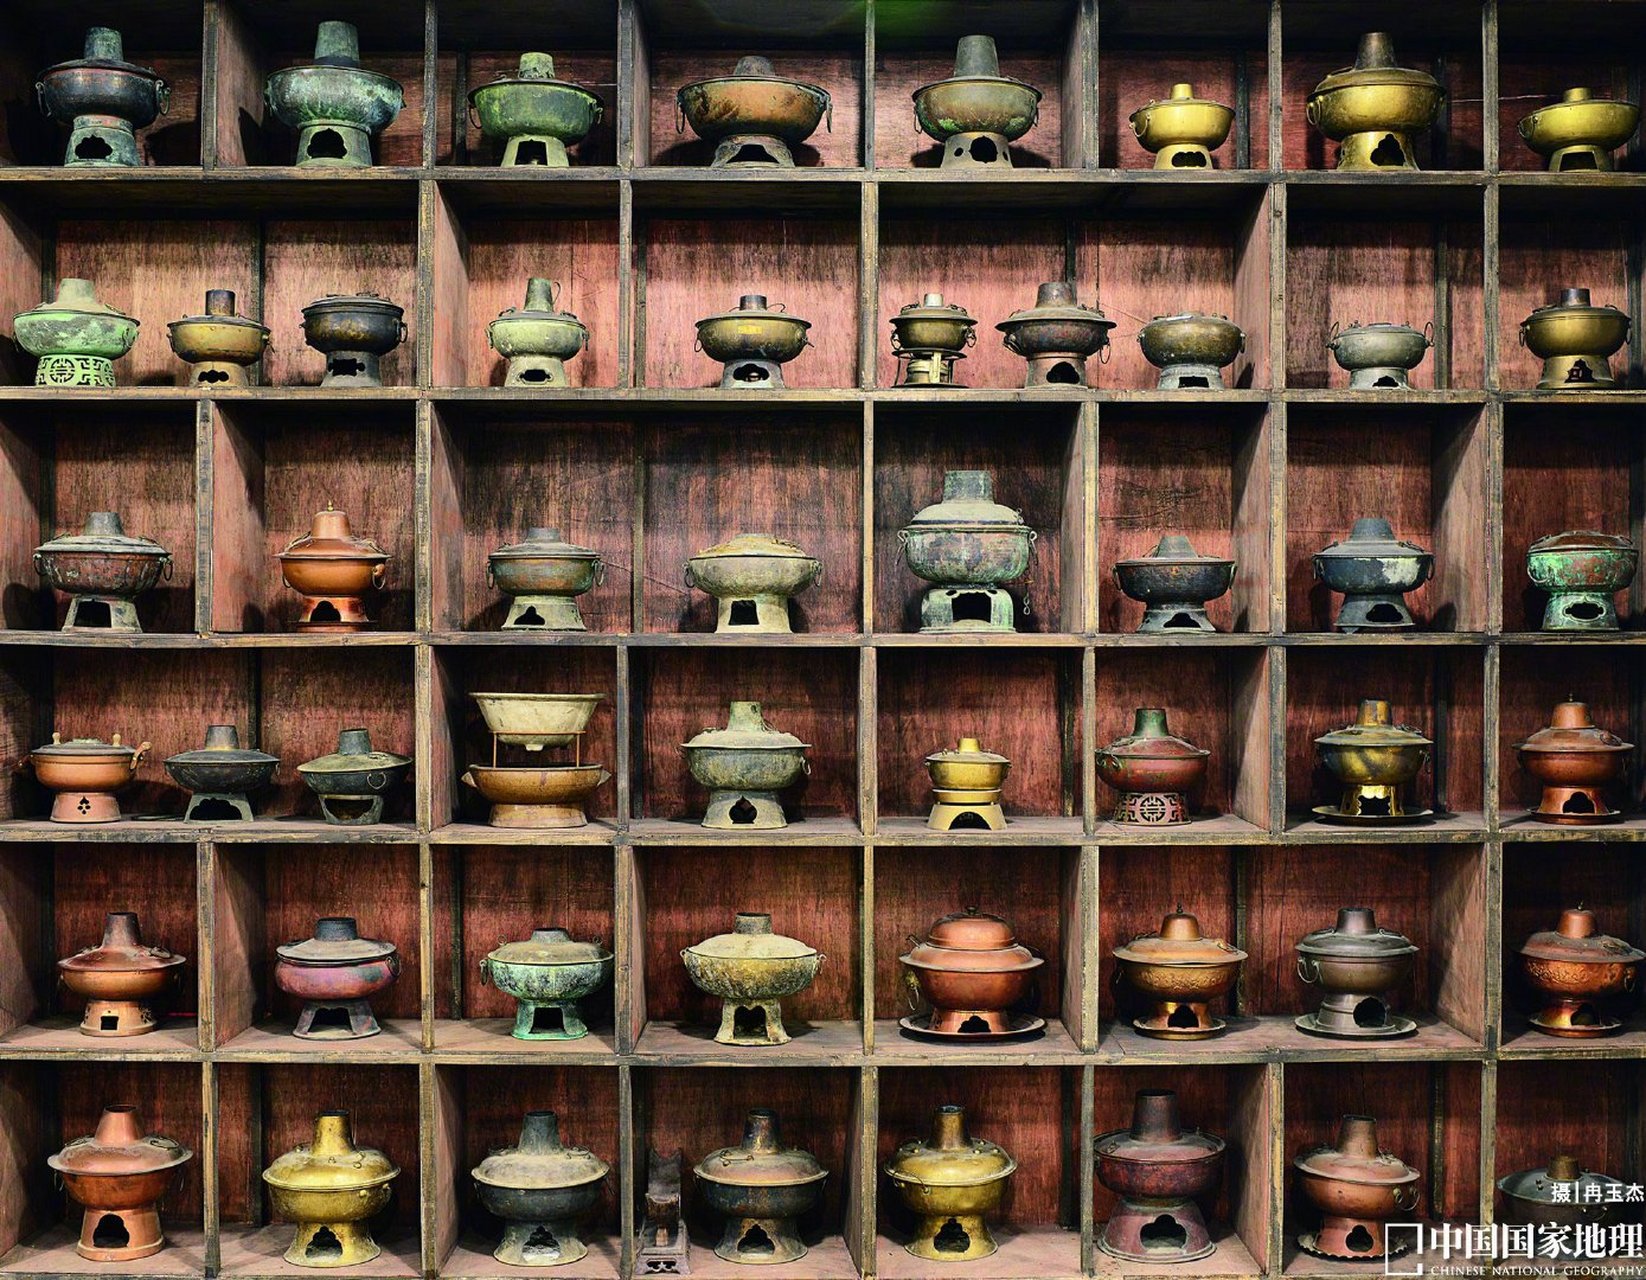 这是一张拍摄于重庆火锅博物馆内的照片